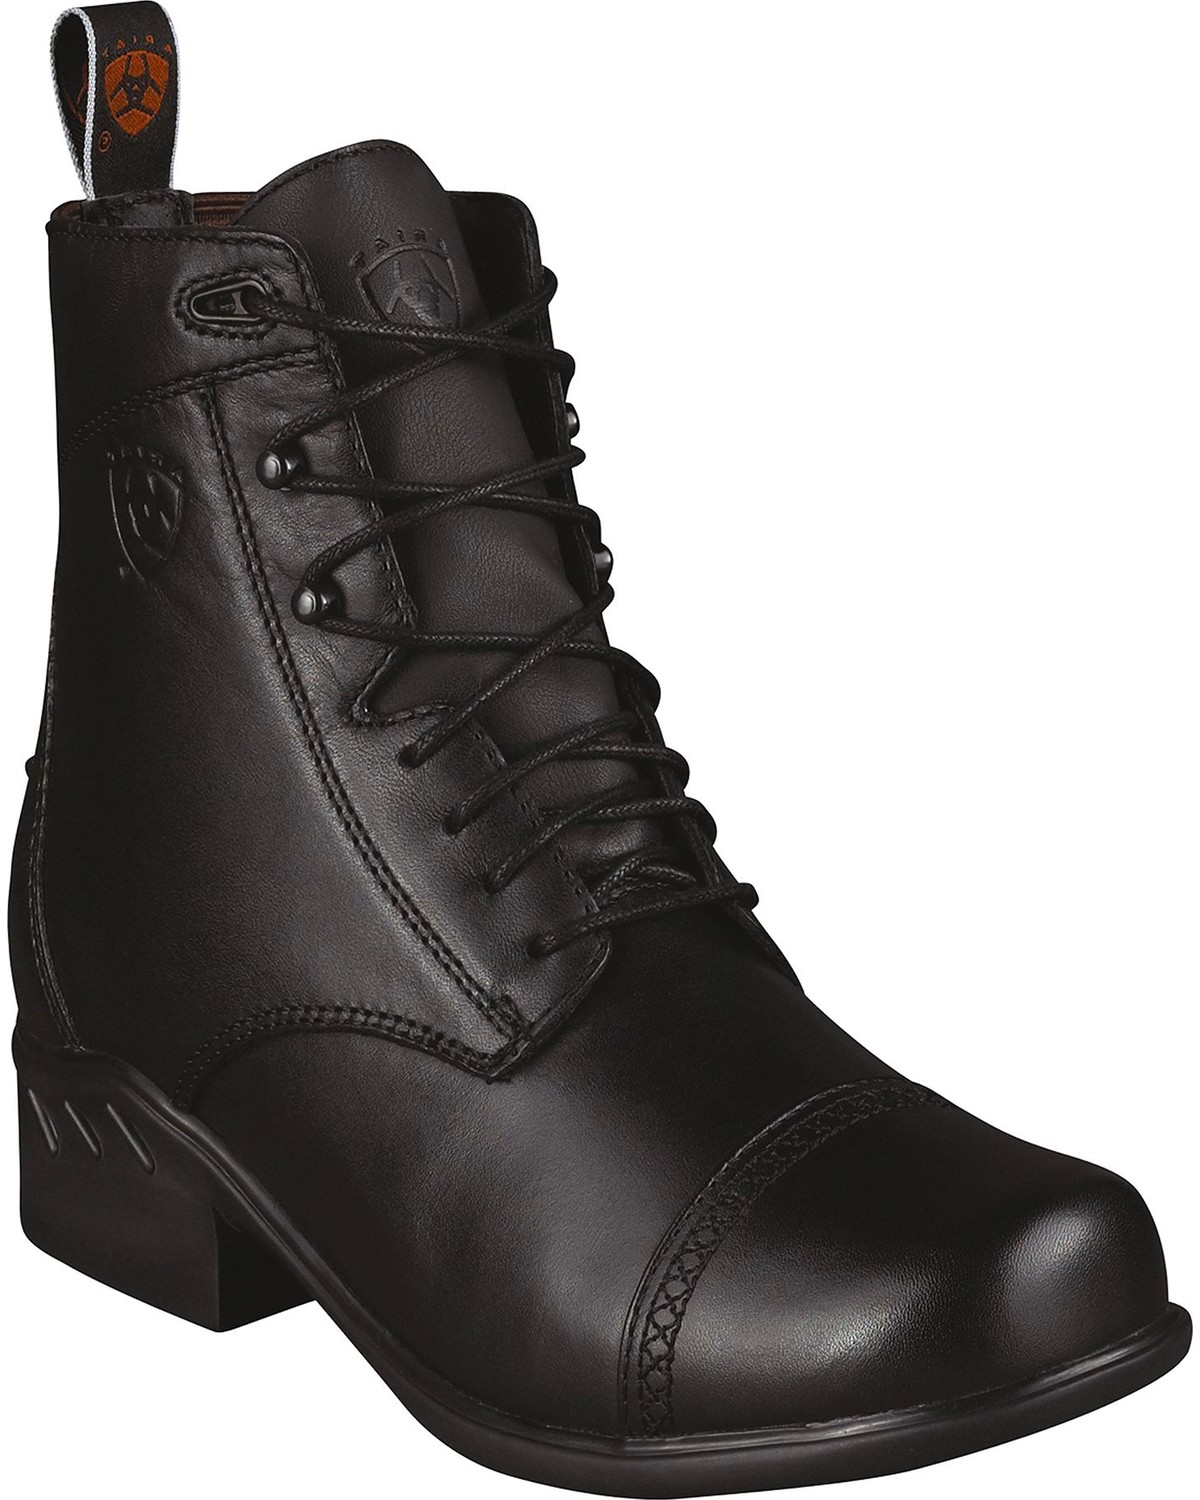 women's paddock boots sale